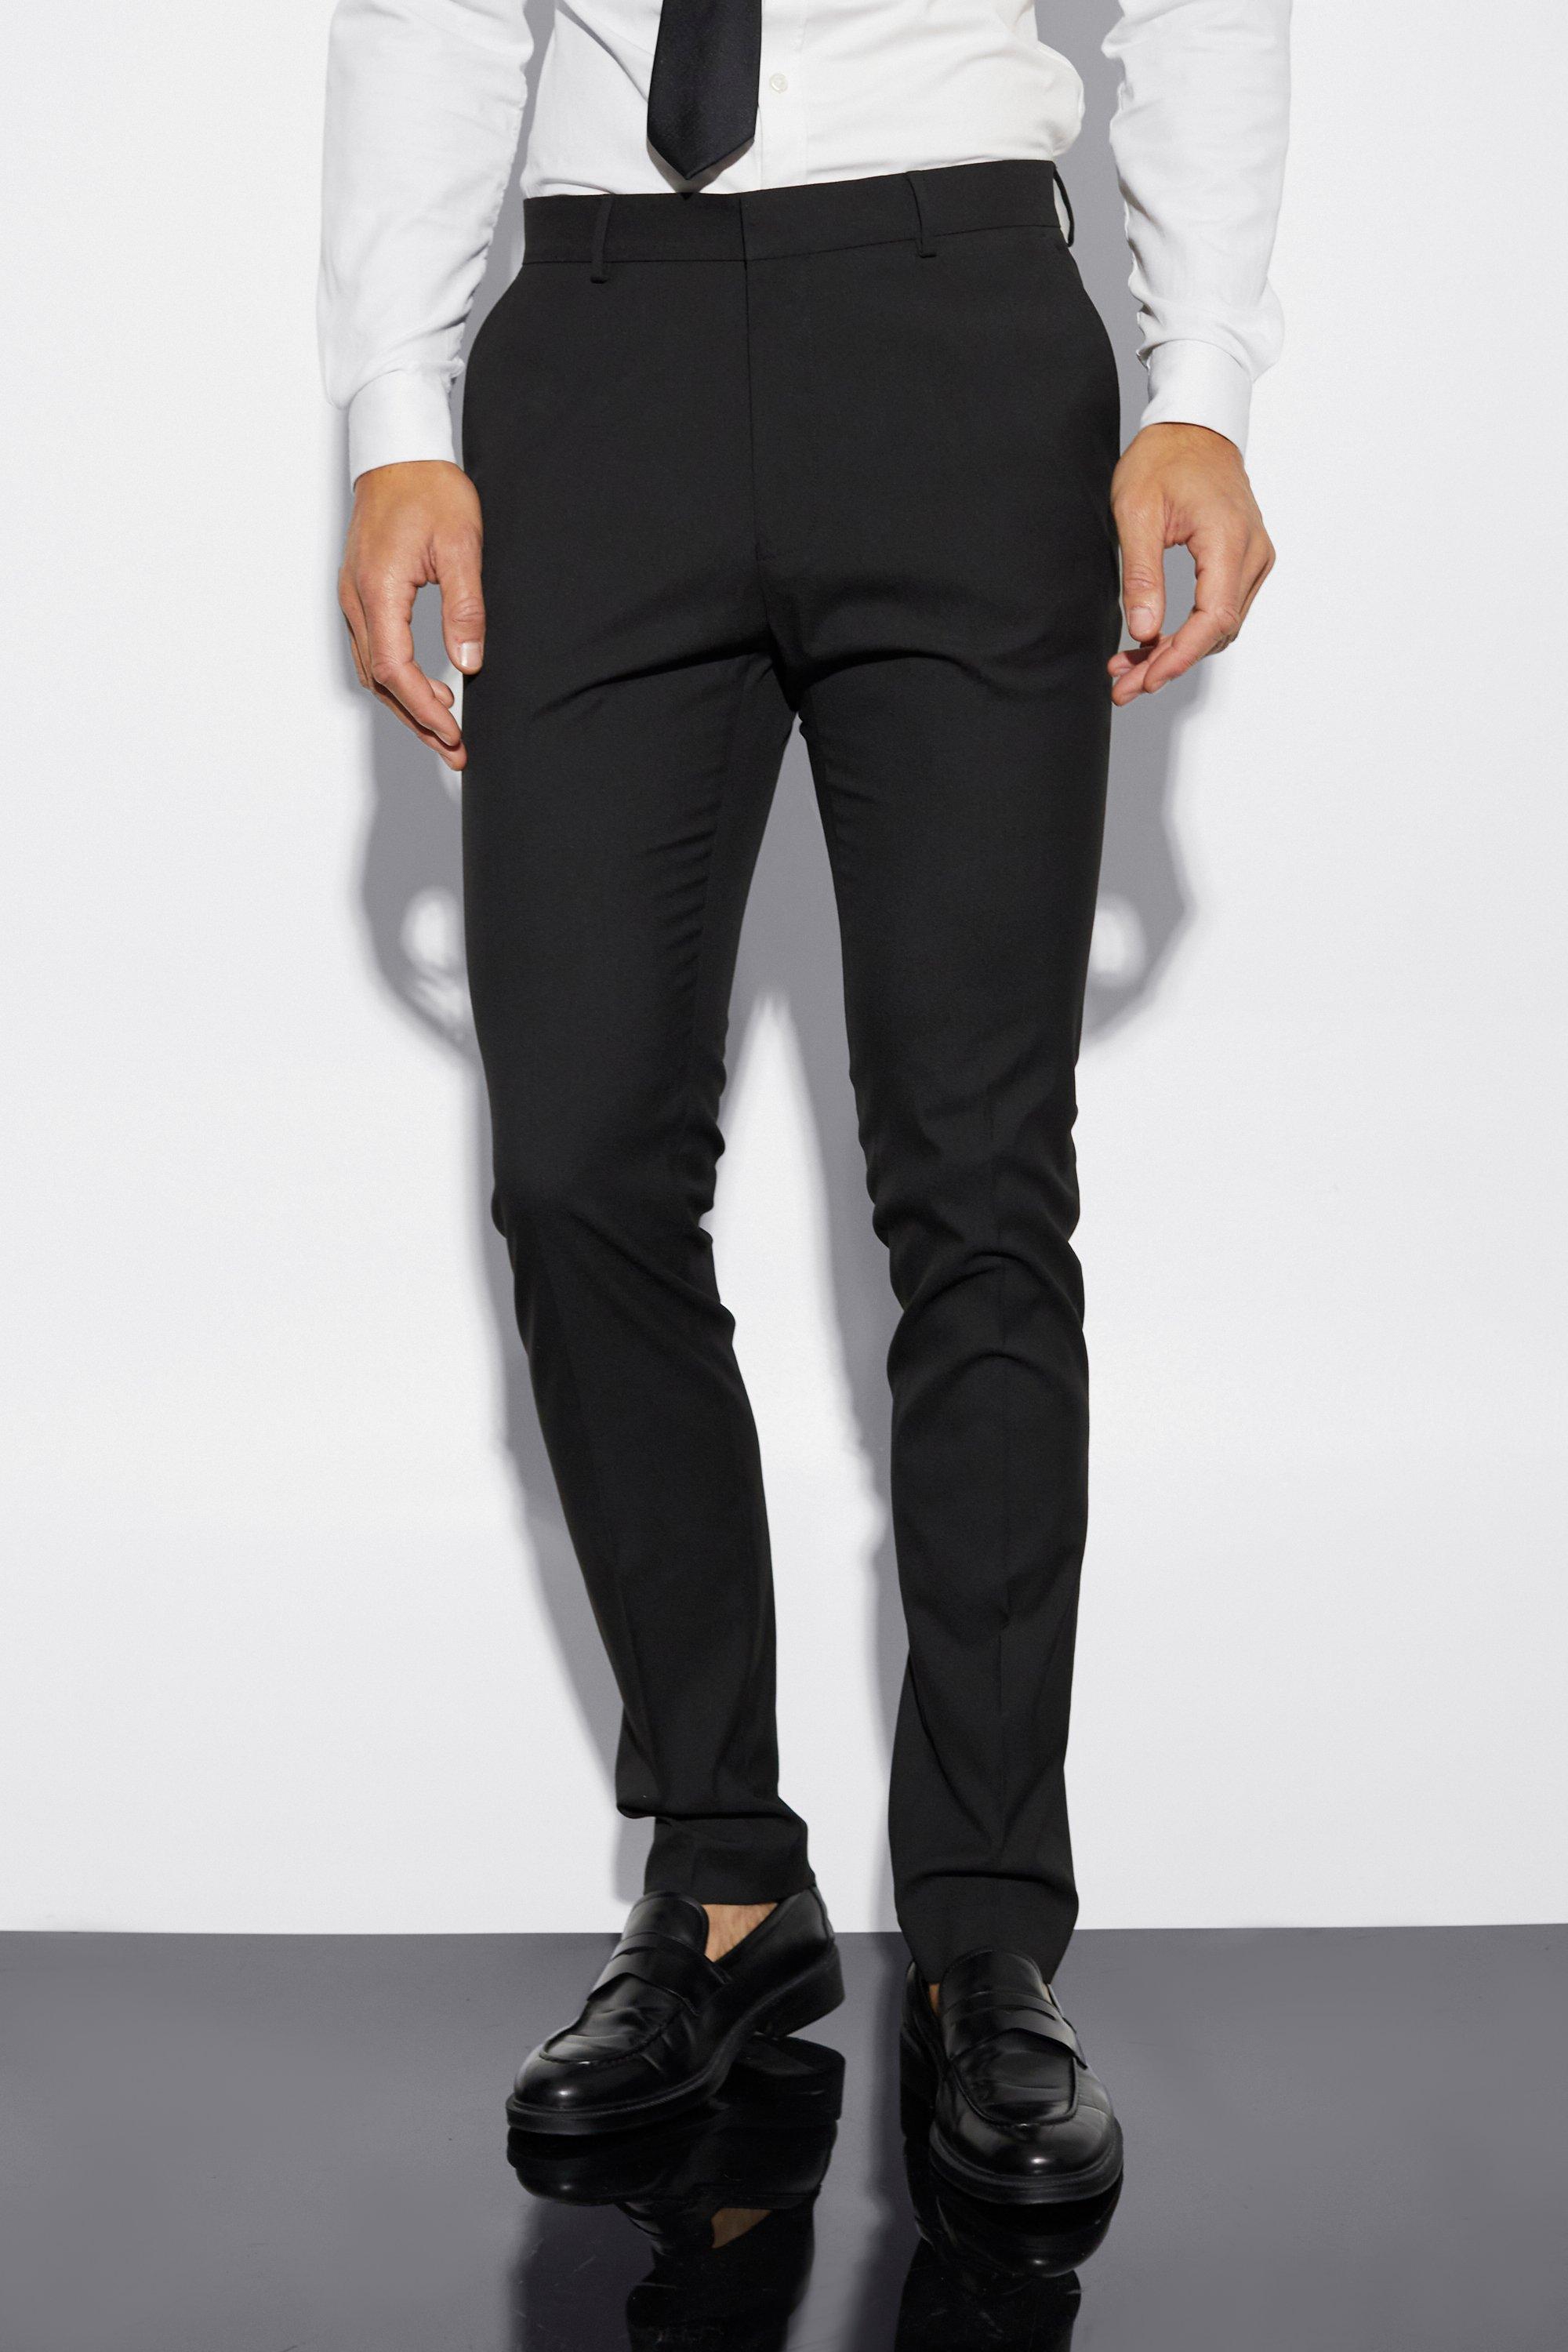 tall - pantalon de costume skinny homme - noir - 36, noir